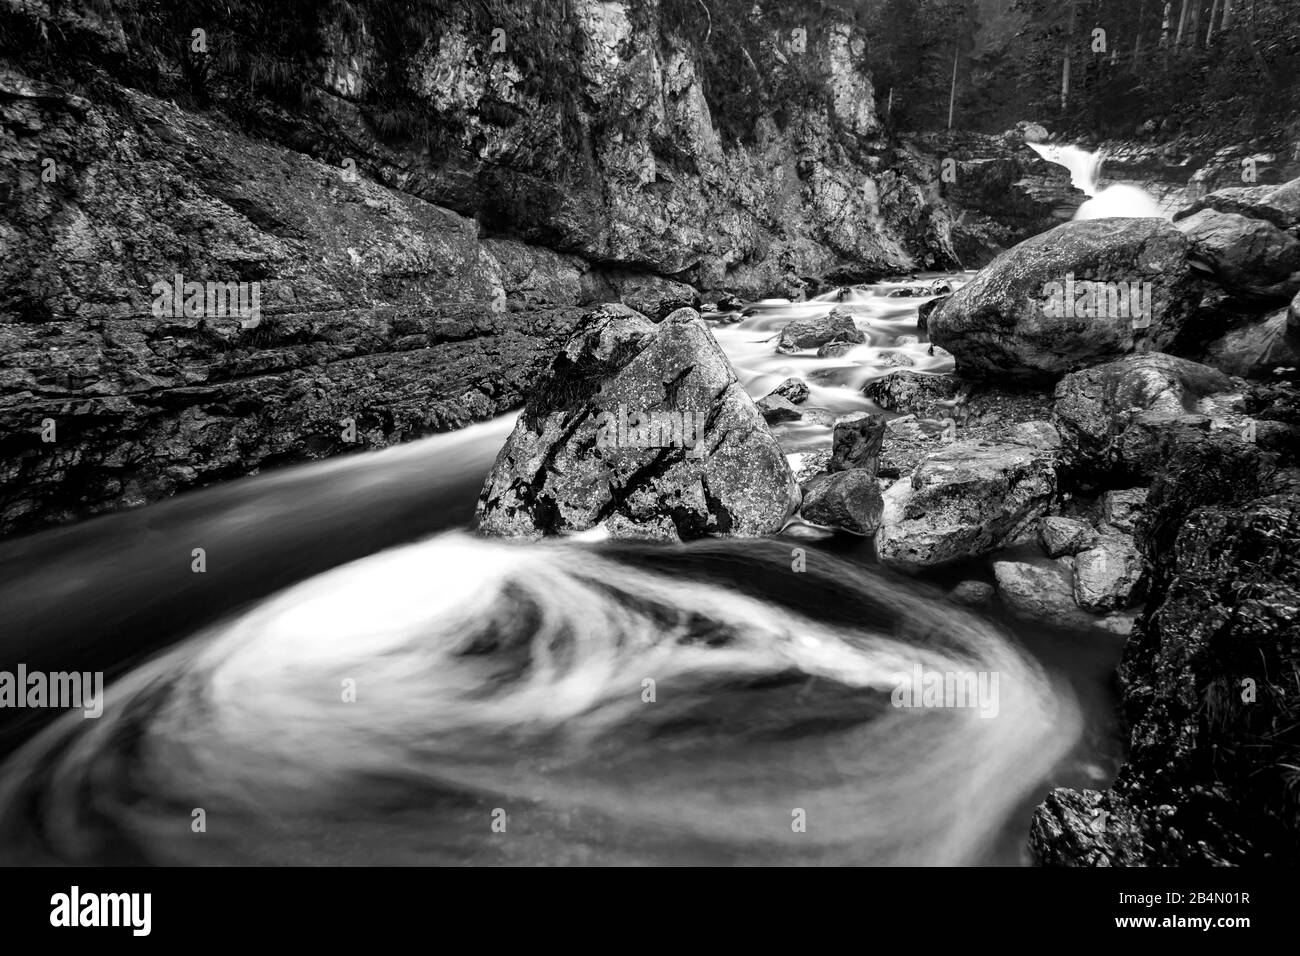 Le débit d'eau forme un gyroscope dans le lit du ruisseau du Kuchflucht près de Garmisch-Partenkirchen Banque D'Images